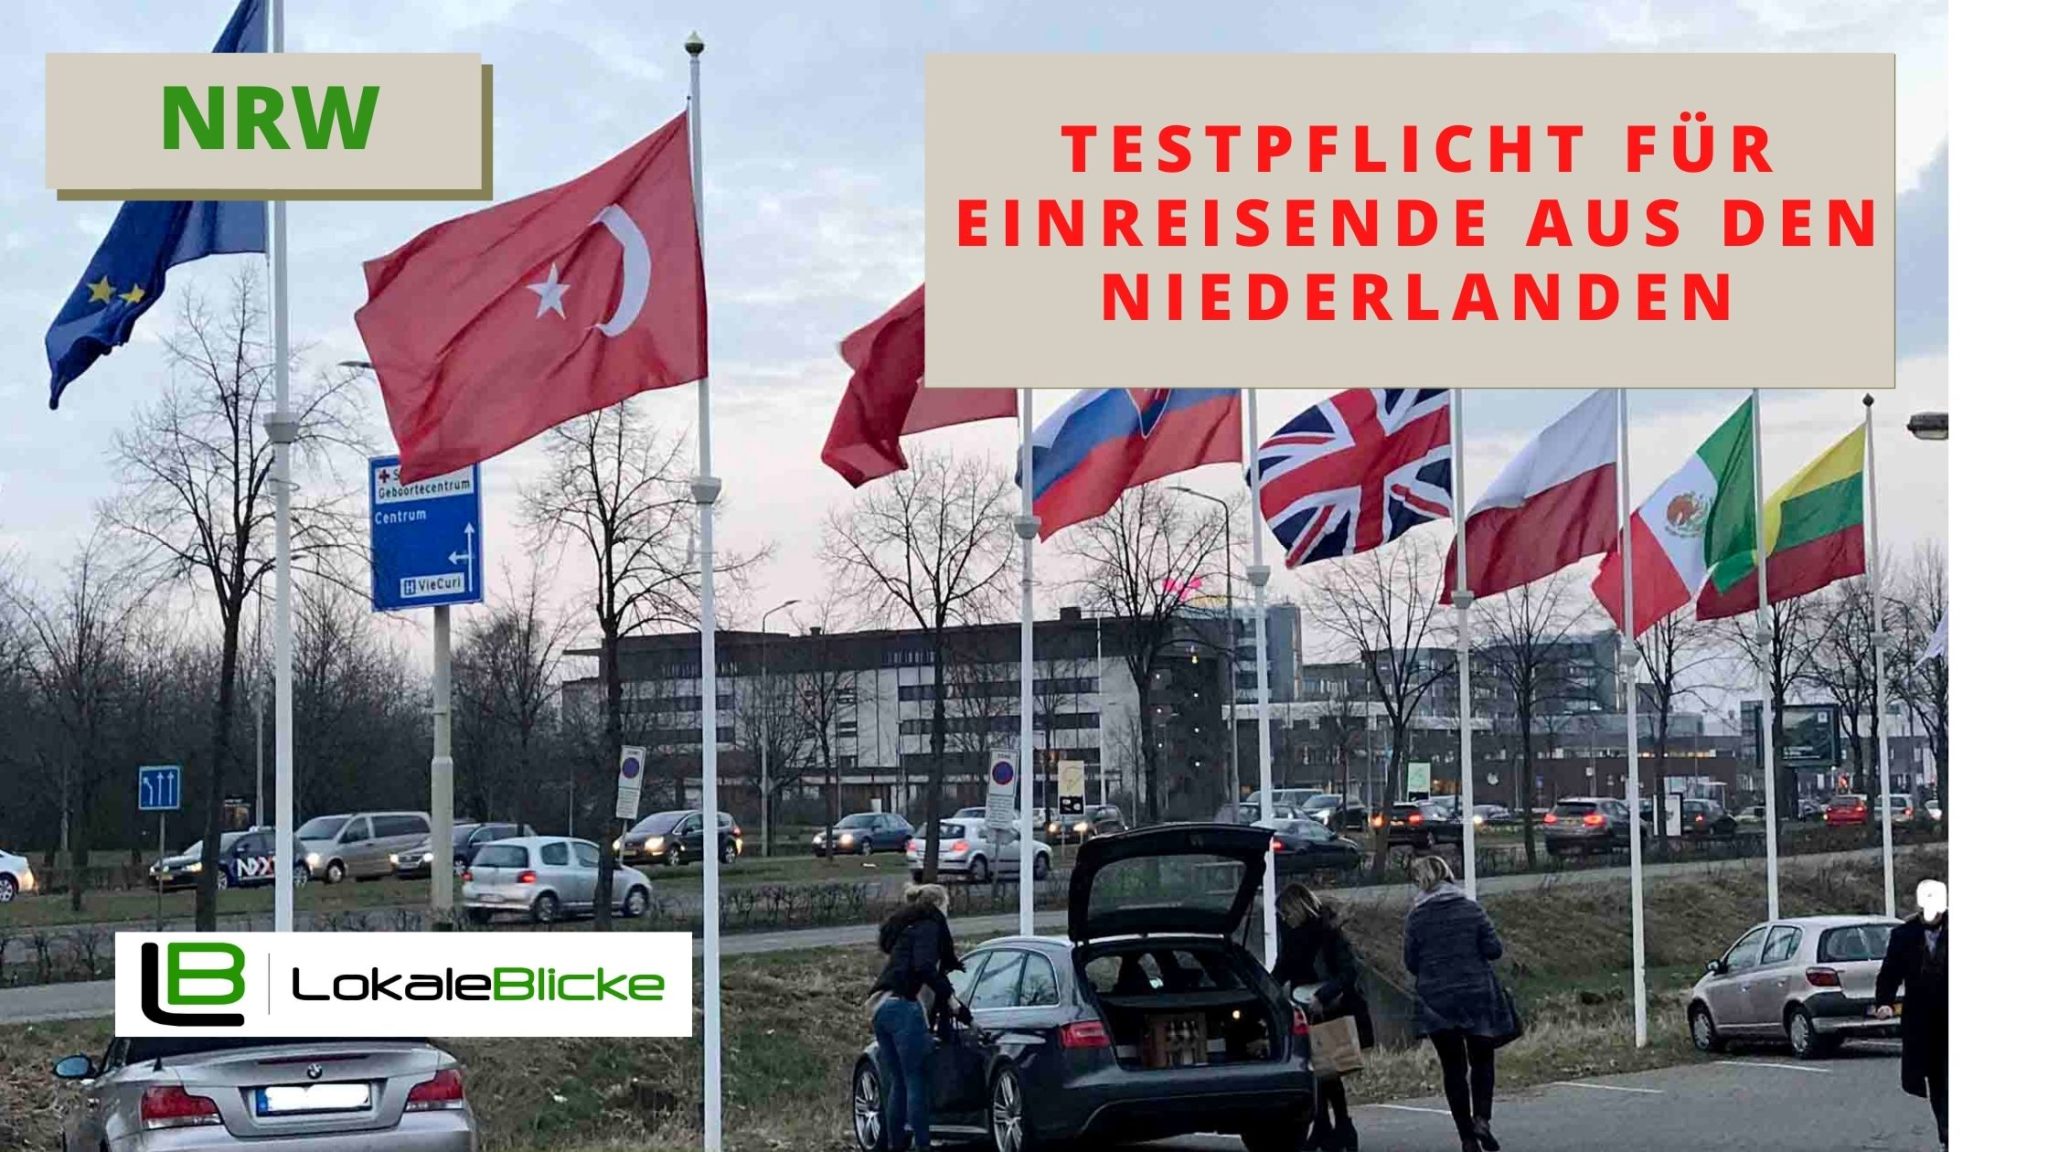 Testpflicht für Einreisende aus den Niederlanden